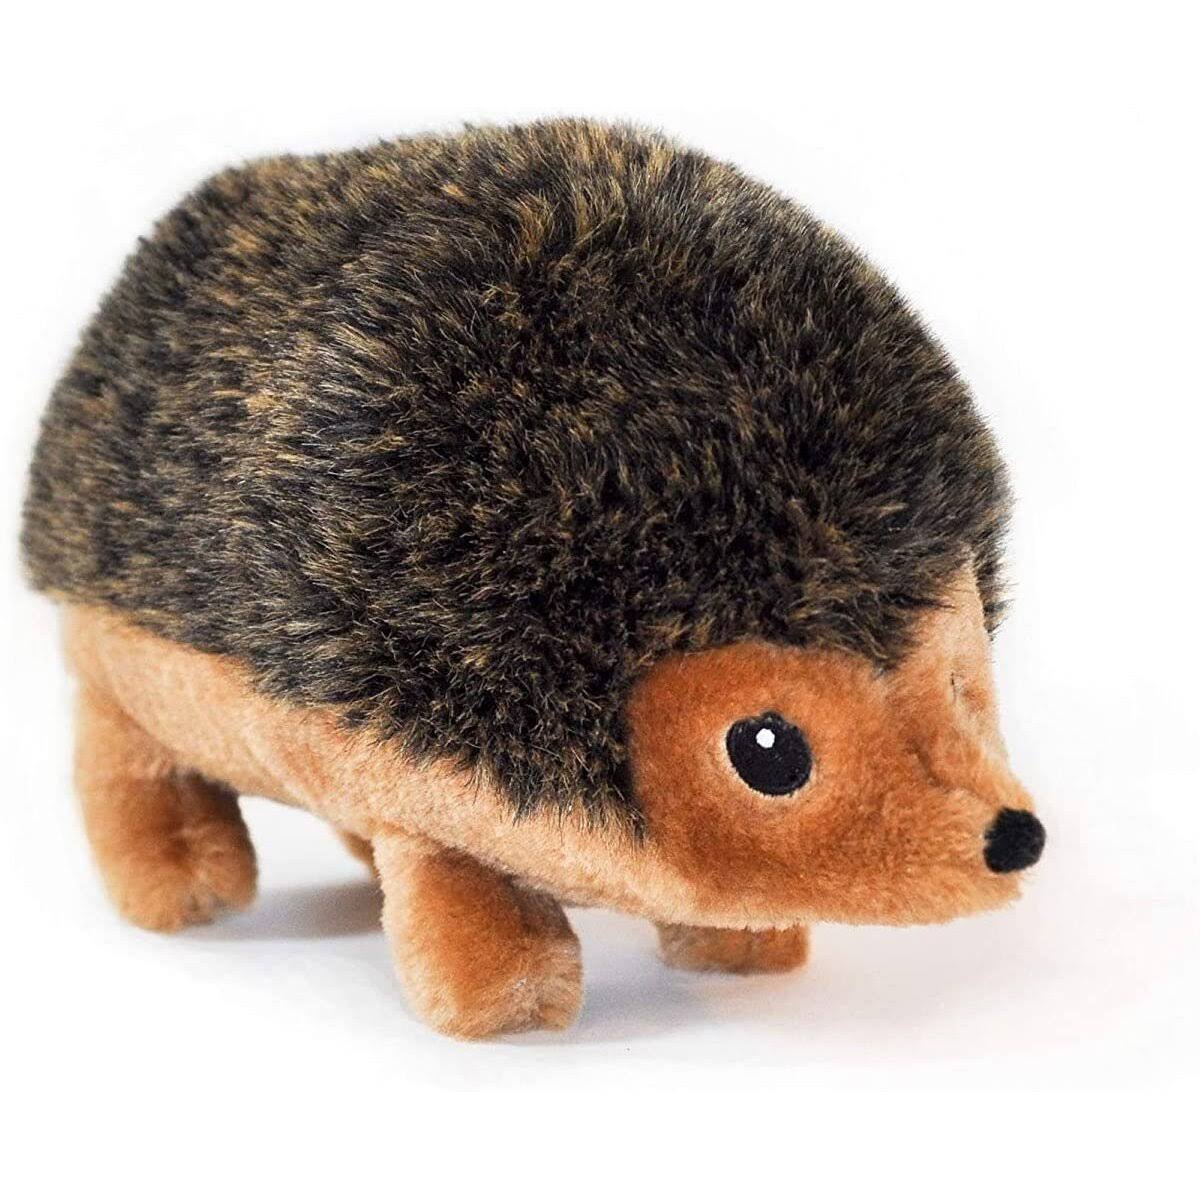 ZippyPaws Hedgehog Squeaky Plush Dog Toy - 12", X-Large